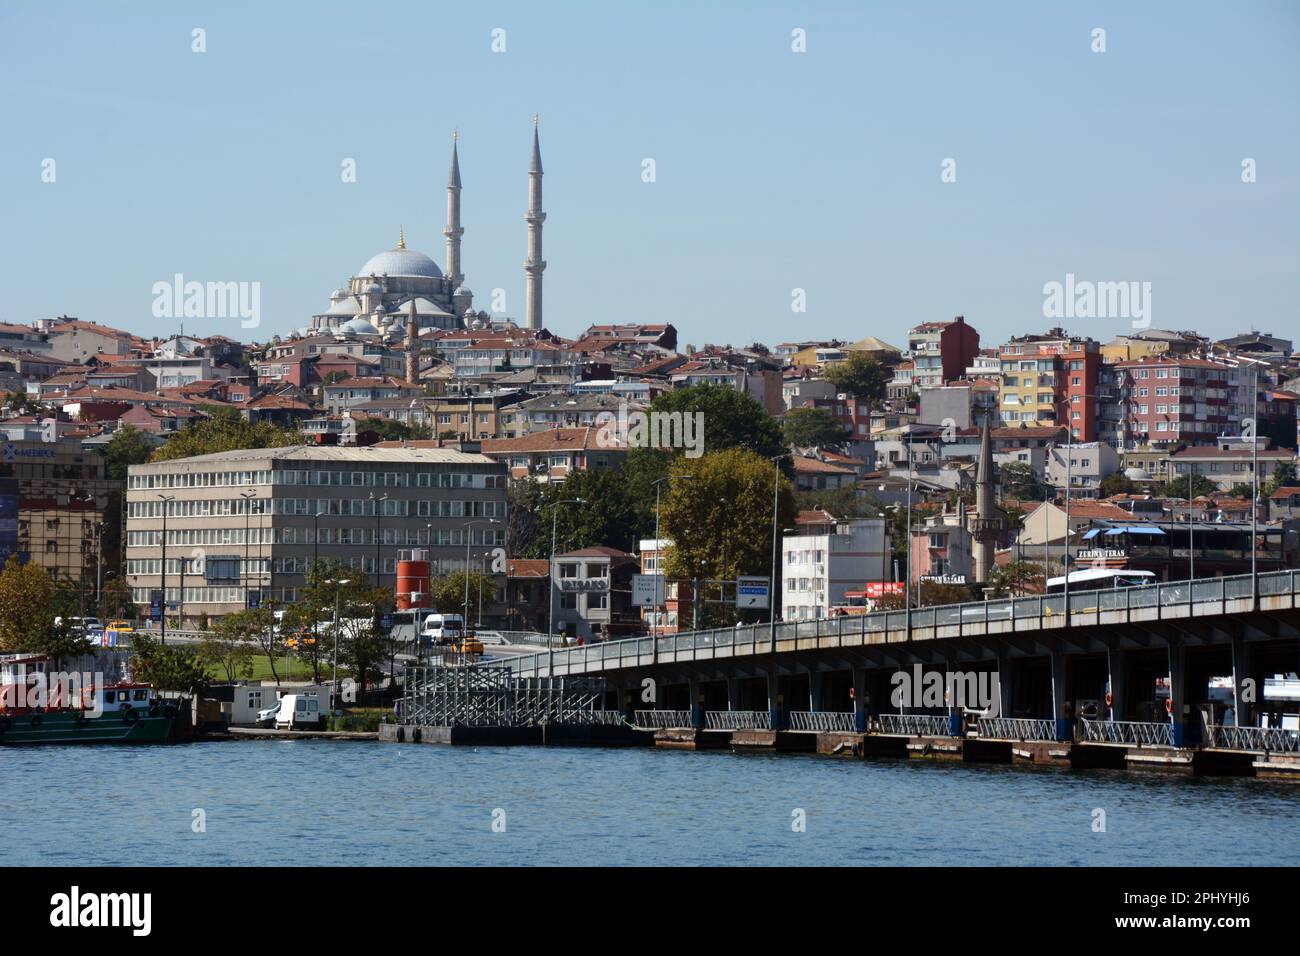 Die Atatürk- oder Unkapani-Brücke über das Goldene Horn auf der europäischen Seite von Istanbul, mit der Fatih-Moschee im Hintergrund, Türkei/Turkiye. Stockfoto